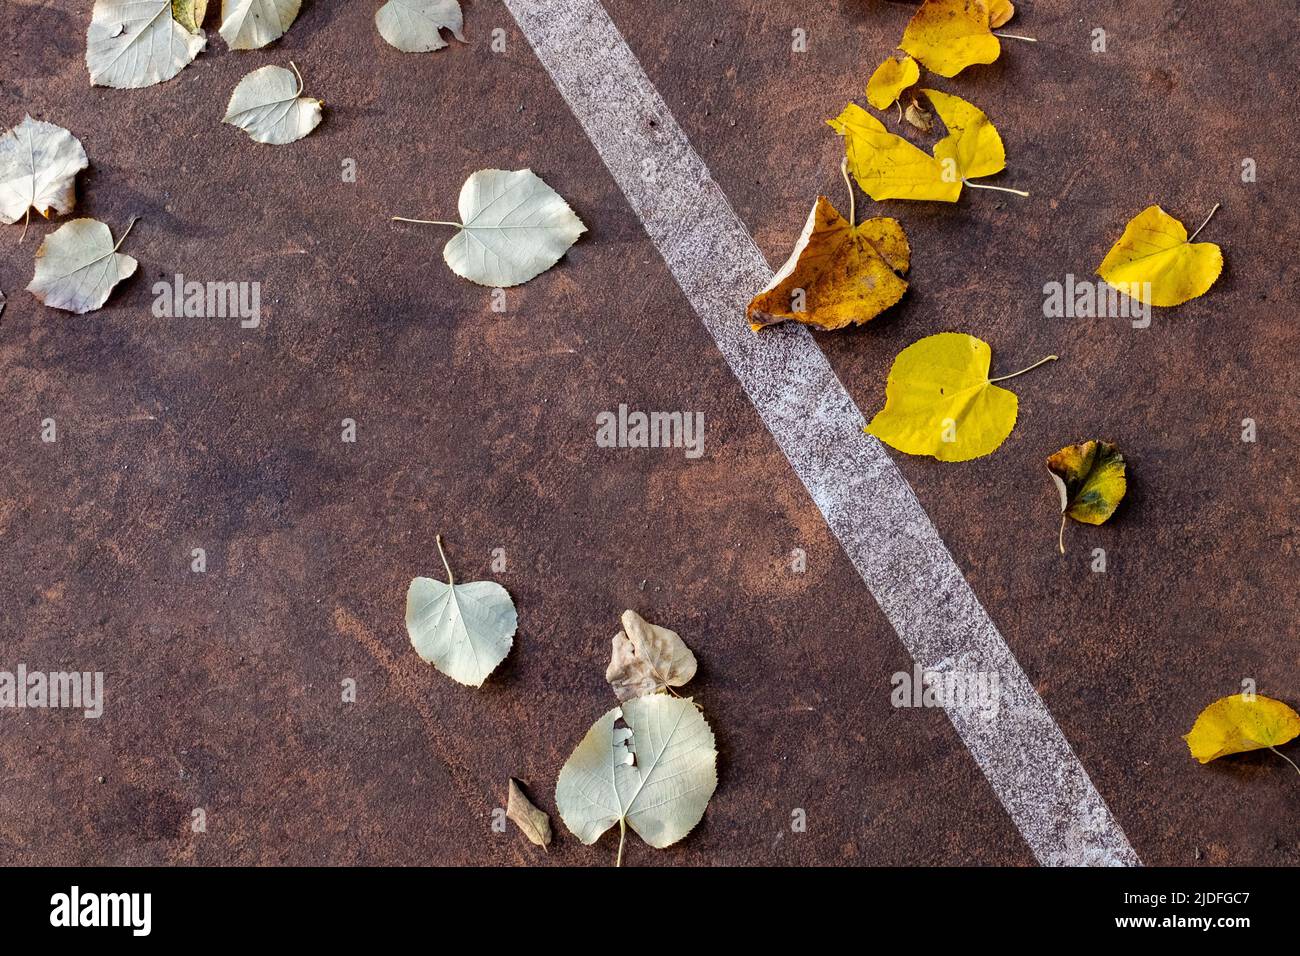 Gros plan des feuilles d'automne tombées sur une aire de jeux extérieure et agencées différemment. Une ligne diagonale sépare clairement les lames. Banque D'Images